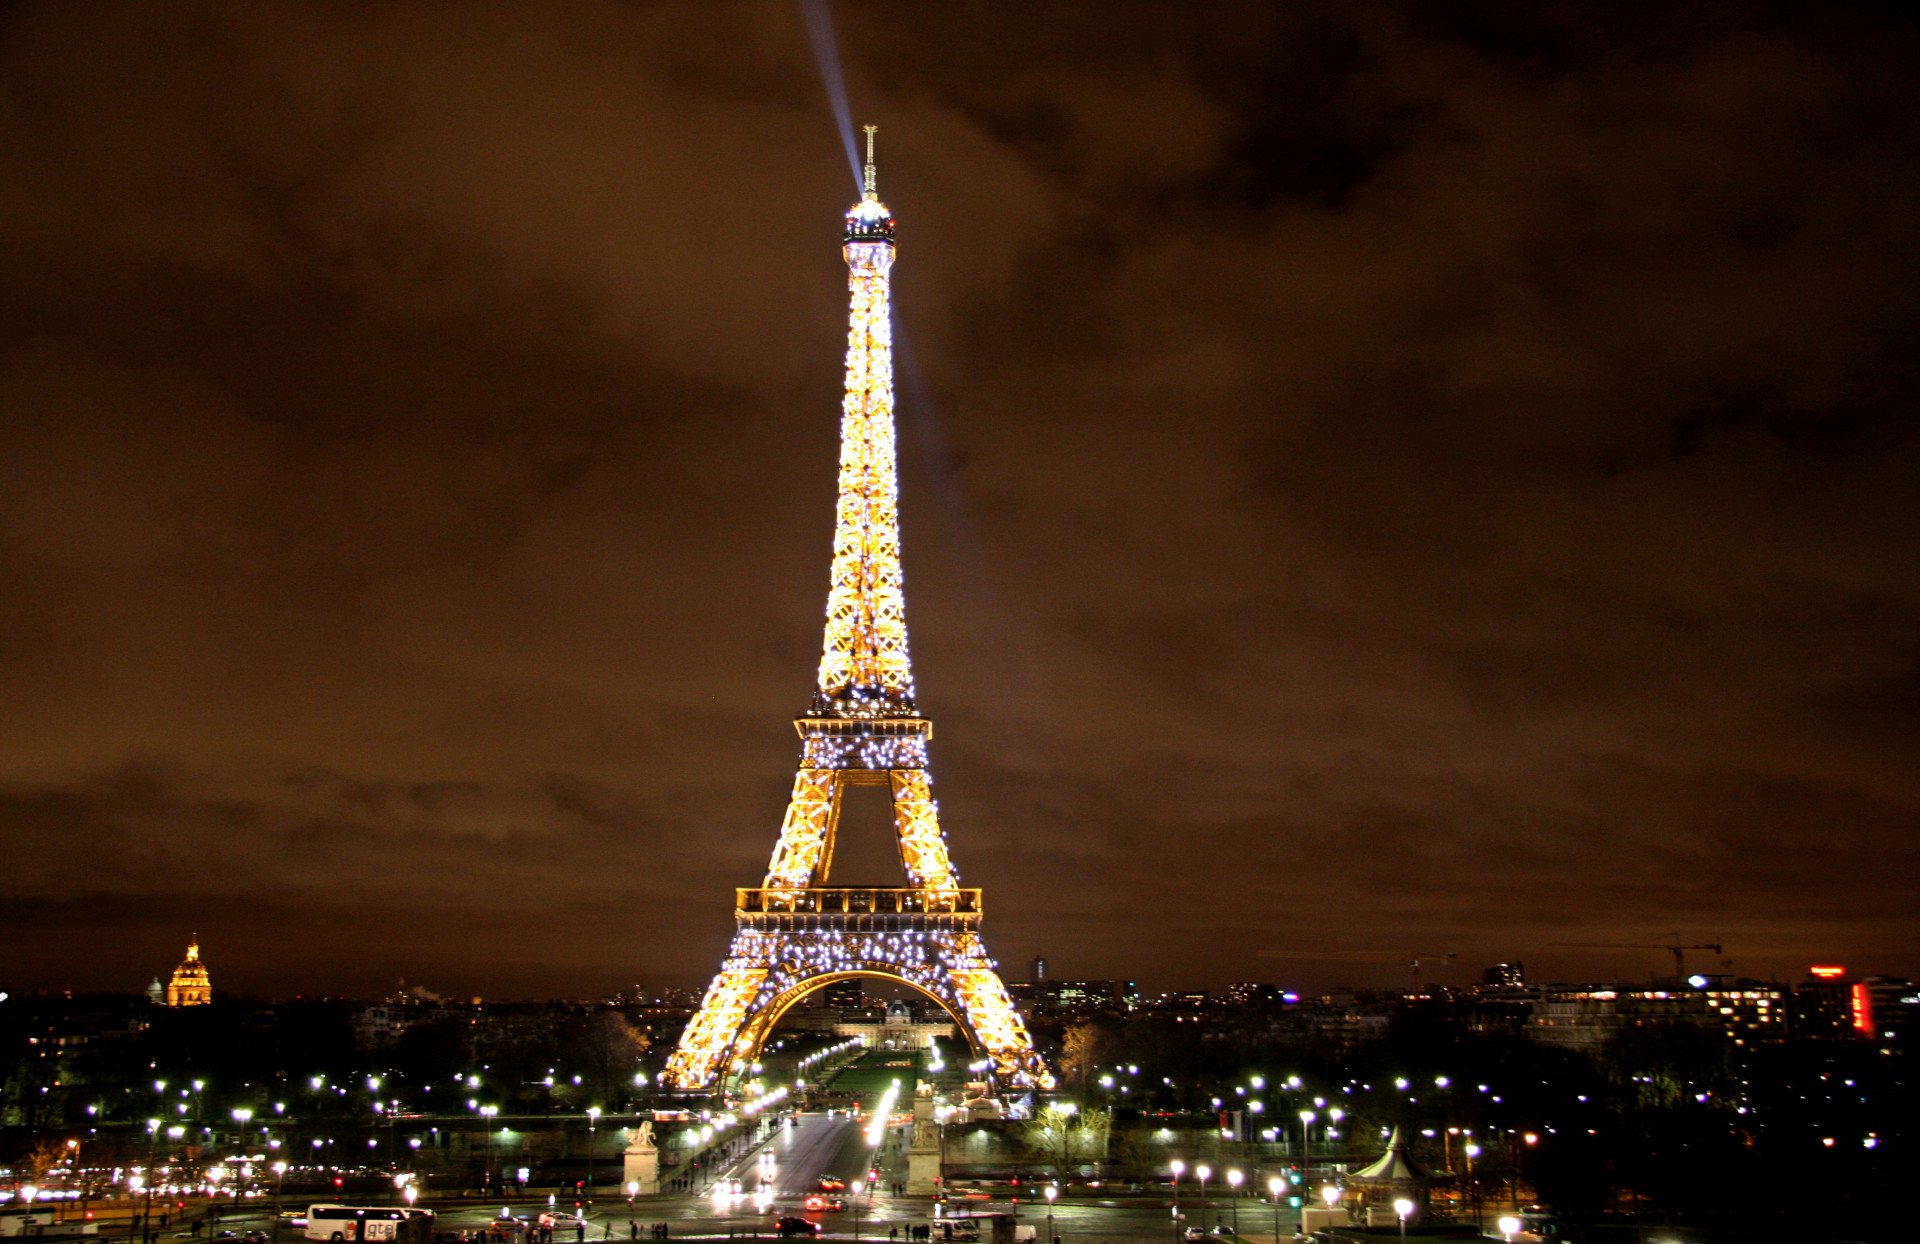 <p>Le mieux pour admirer la grande dame de Paris reste évidemment la nuit. Avec ses éclairages et lumières, elle veille sur les Parisiens durant toute la nuit.</p> <p>Découvrez-en plus sur la Tour Eiffel en cliquant <a href="https://fr.starsinsider.com/preview/364866/n">ICI</a>.</p><p><a href="https://www.msn.com/fr-fr/community/channel/vid-7xx8mnucu55yw63we9va2gwr7uihbxwc68fxqp25x6tg4ftibpra?cvid=94631541bc0f4f89bfd59158d696ad7e">Suivez-nous et accédez tous les jours à du contenu exclusif</a></p>